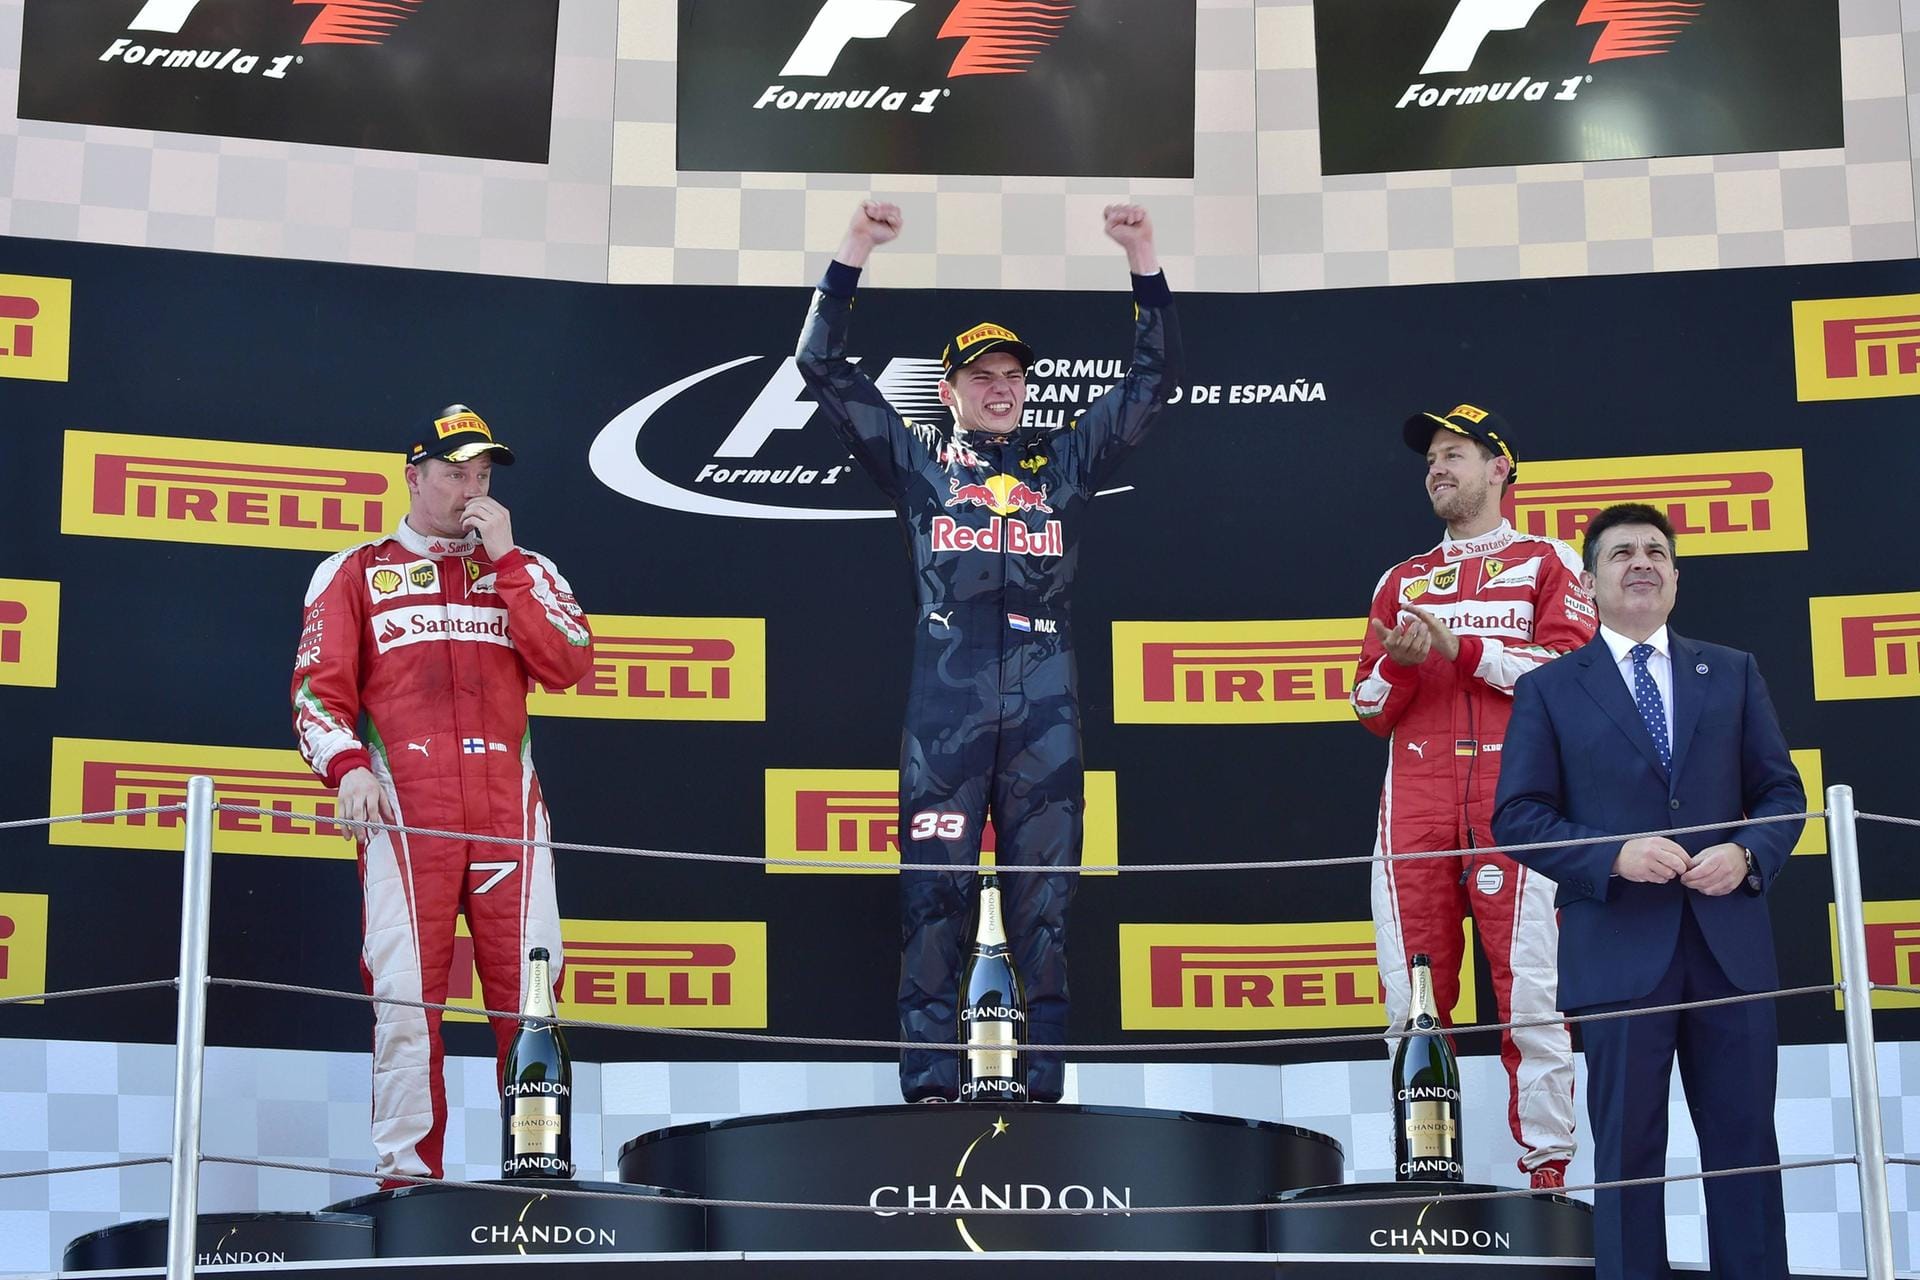 Schneller Aufstieg: Nach starken Leistungen wird Verstappen kurz nach Saisonstart 2016 zu Red Bull geholt, ersetzt dort Daniil Kvyat. Und gleich in seinem ersten Rennen gelingt ihm in Barcelona der große Coup: Der erste Grand-Prix-Sieg seiner Formel-1-Karriere.